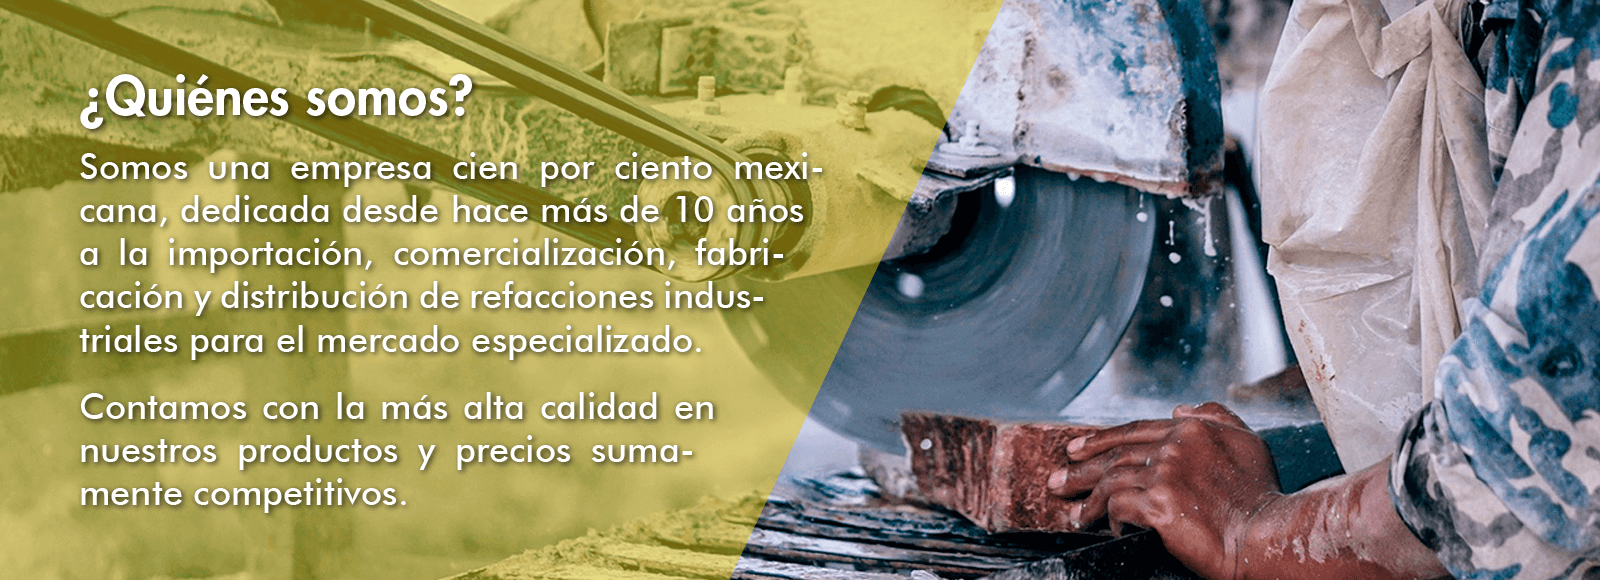 Empresa mexicana dedicada a importación, comercialización, fabricación y distribución de refacciones industriales para el mercado especializado